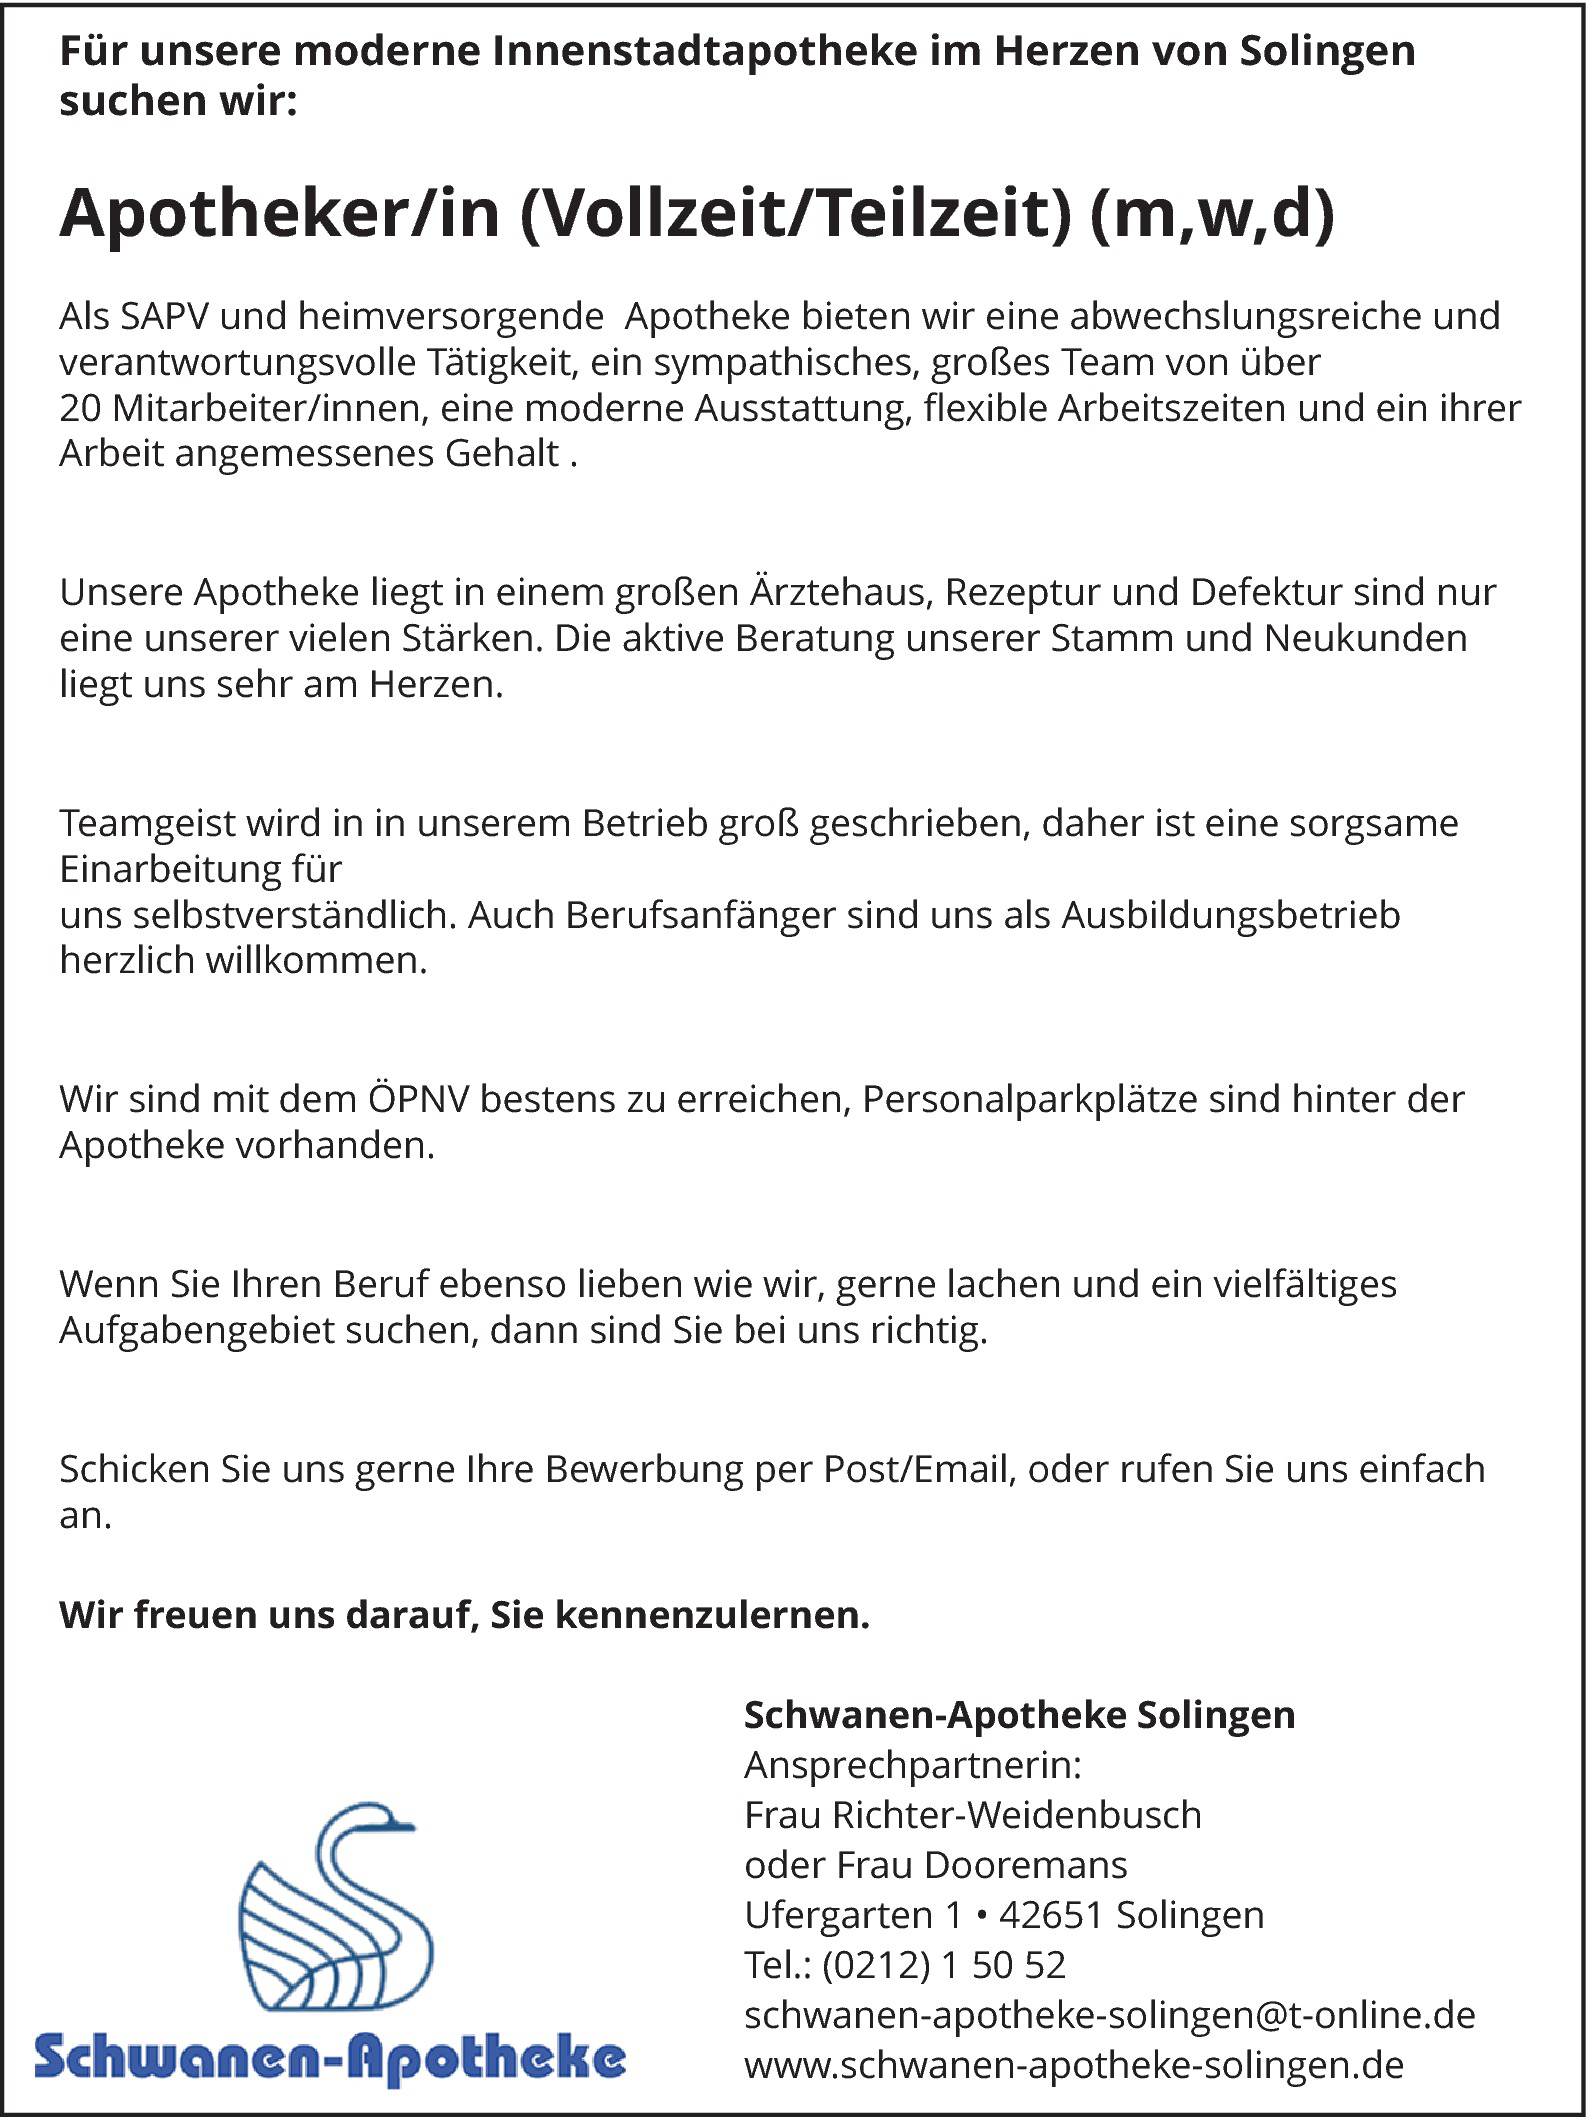 Schwanen Apotheke Solingen Apotheker / Apothekerin stellencompass.de